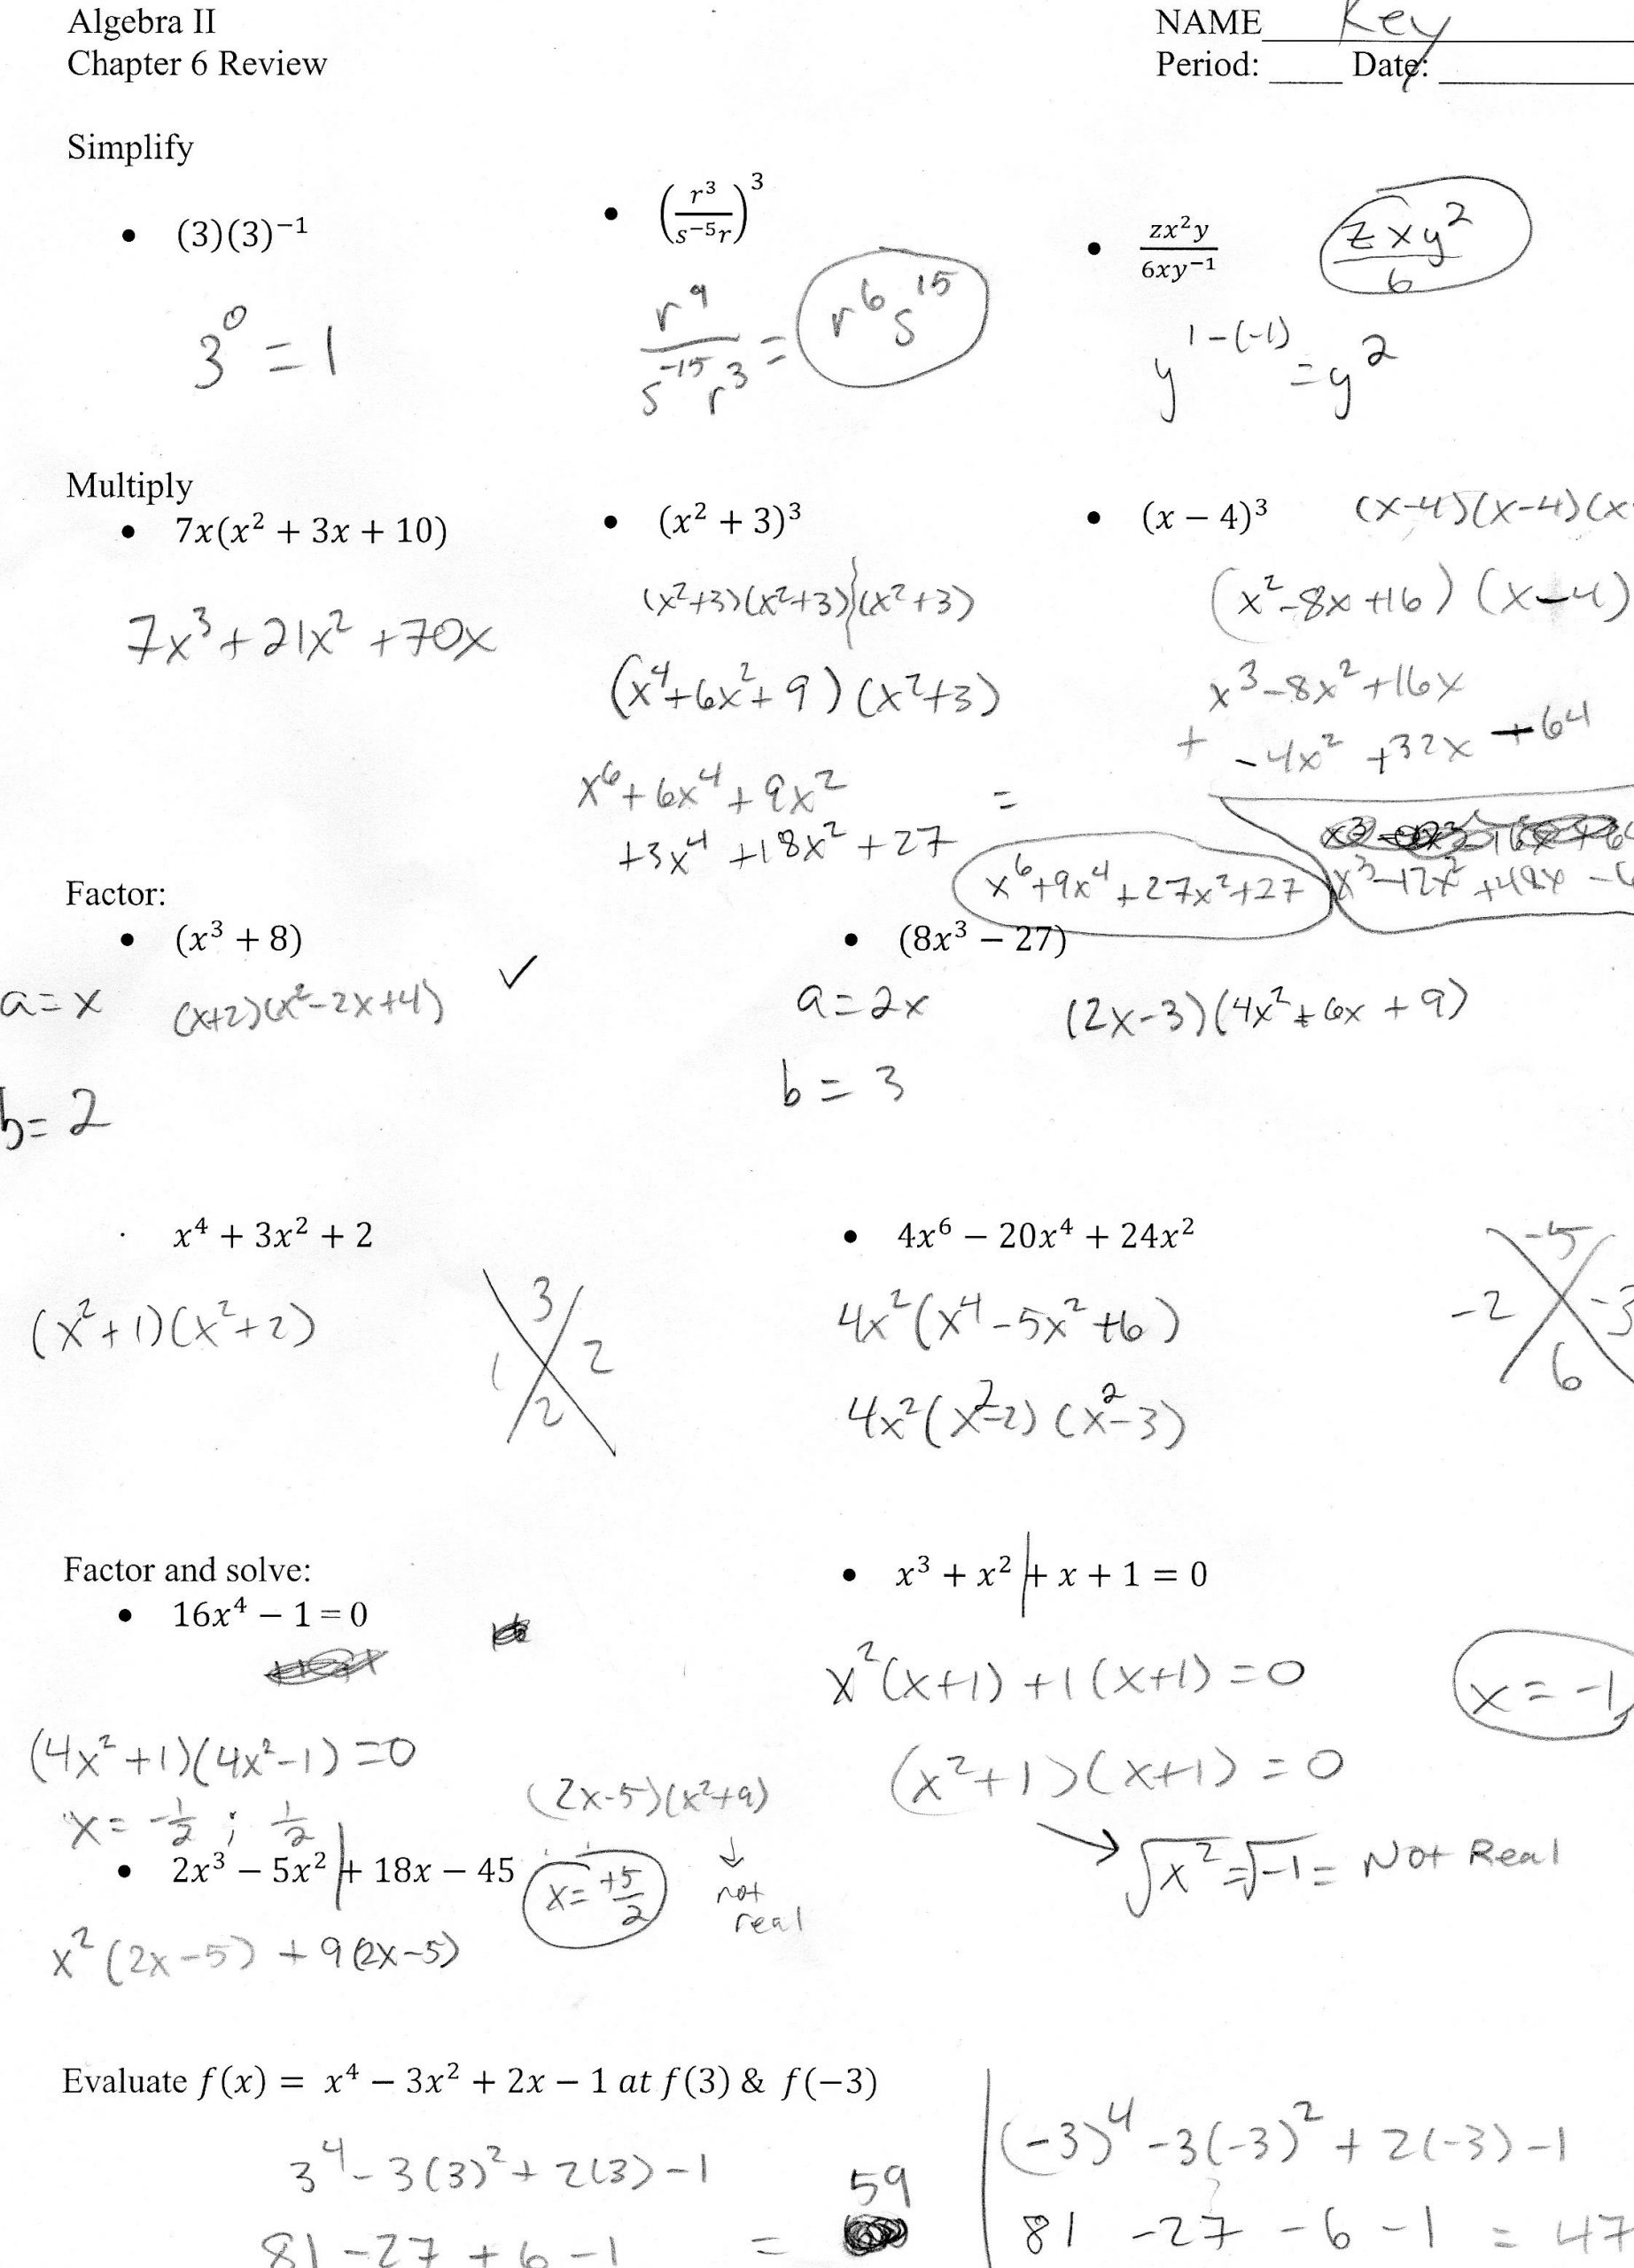 Evaluating Functions Worksheet Algebra 1 Algebra Ii Mr Shepherd S Pasture